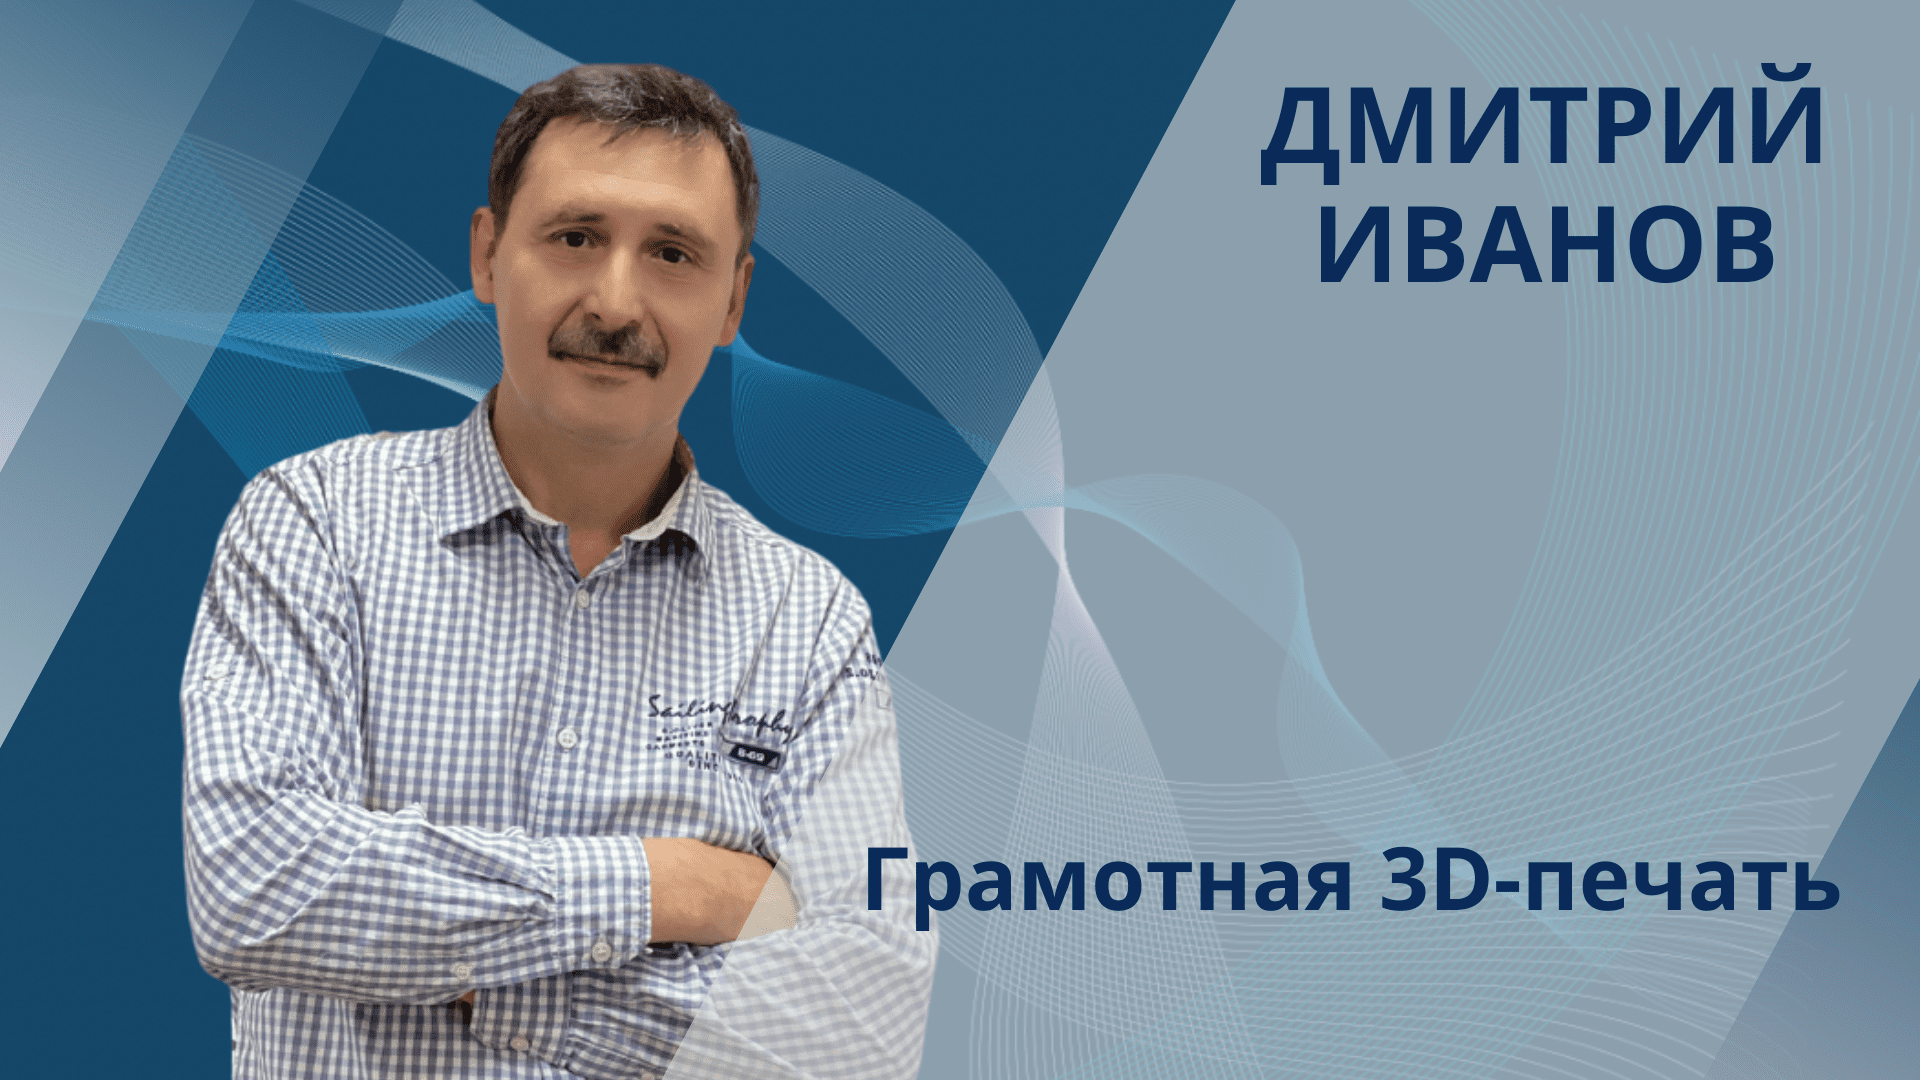 Дмитрий Иванов. Грамотная 3D-печать